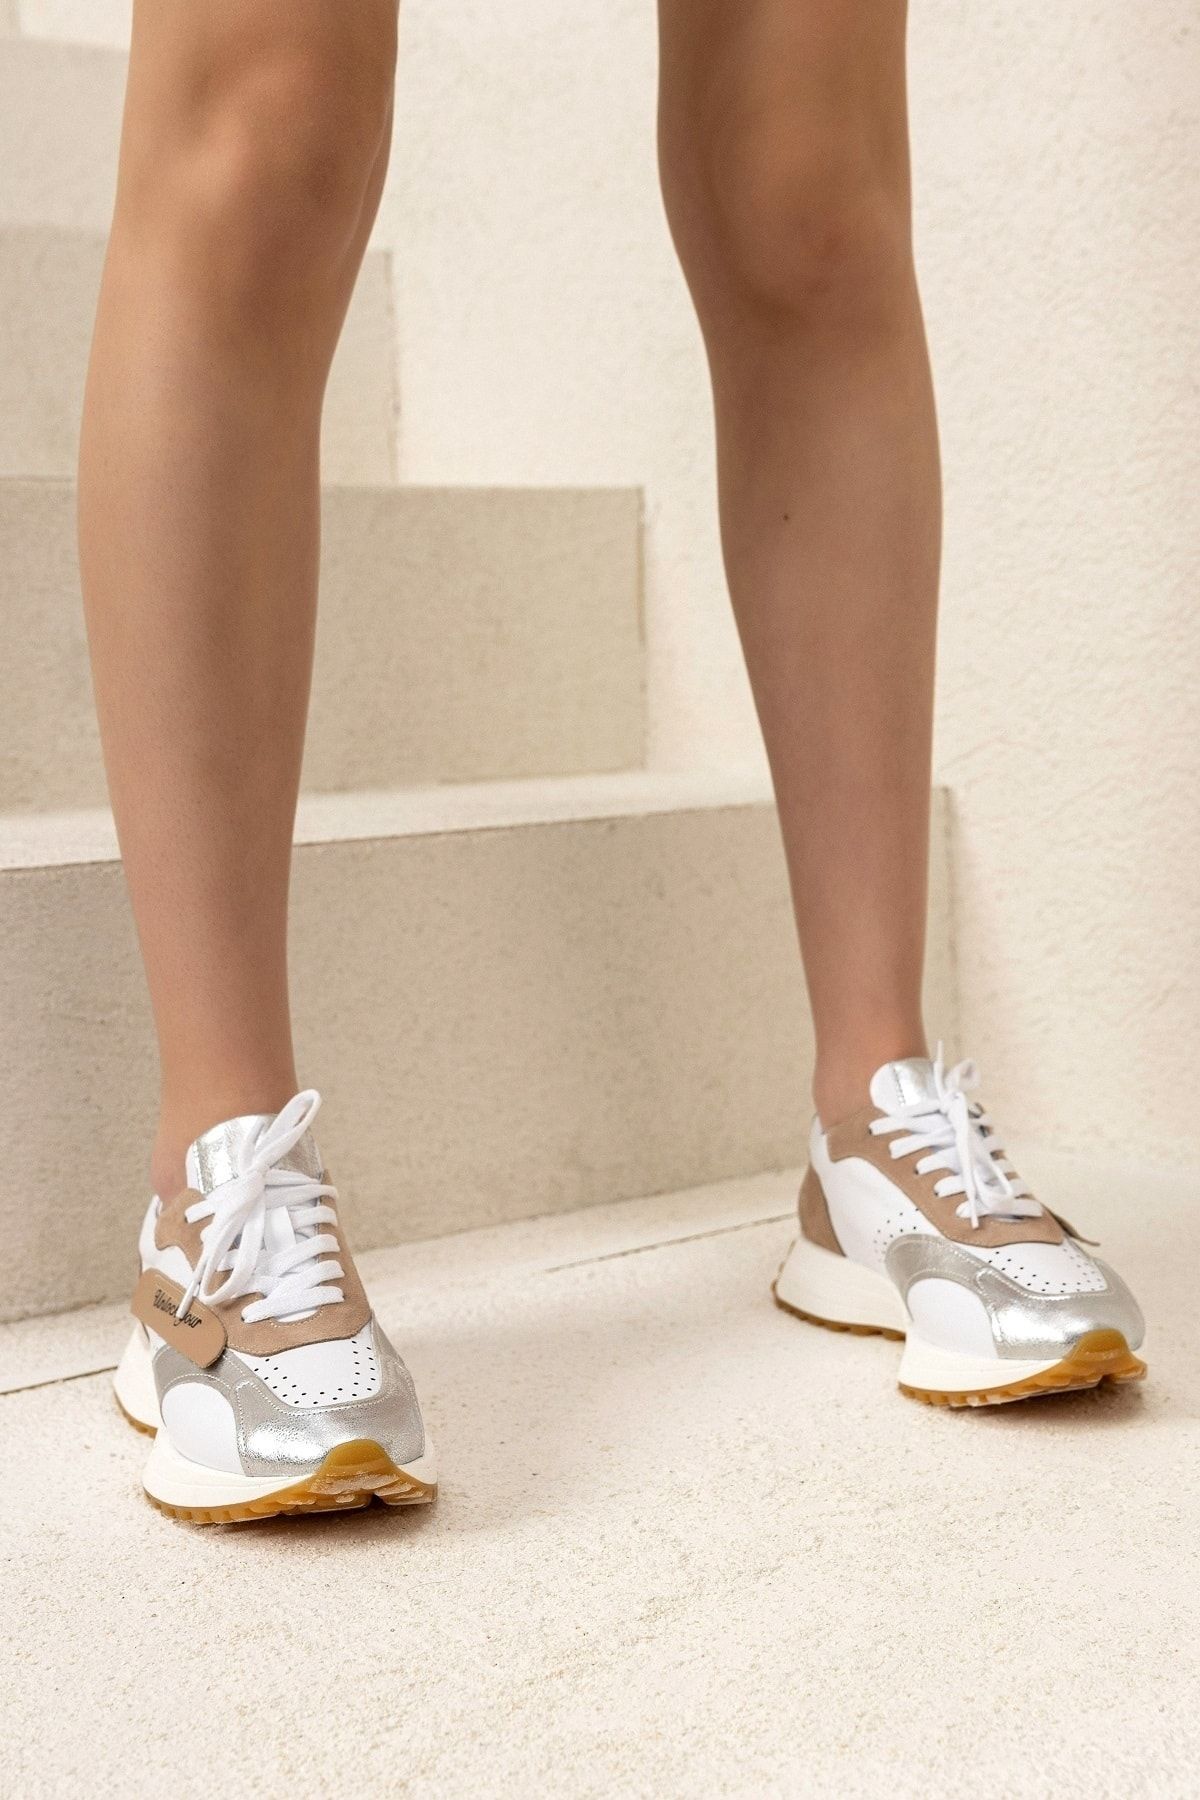 Tindirella Kadın Beyaz Günlük Rahat Spor Ayakkabı Sneaker Hakiki Deri Yürüyüş Koşu Ayakkabı 4cm Ortapedik